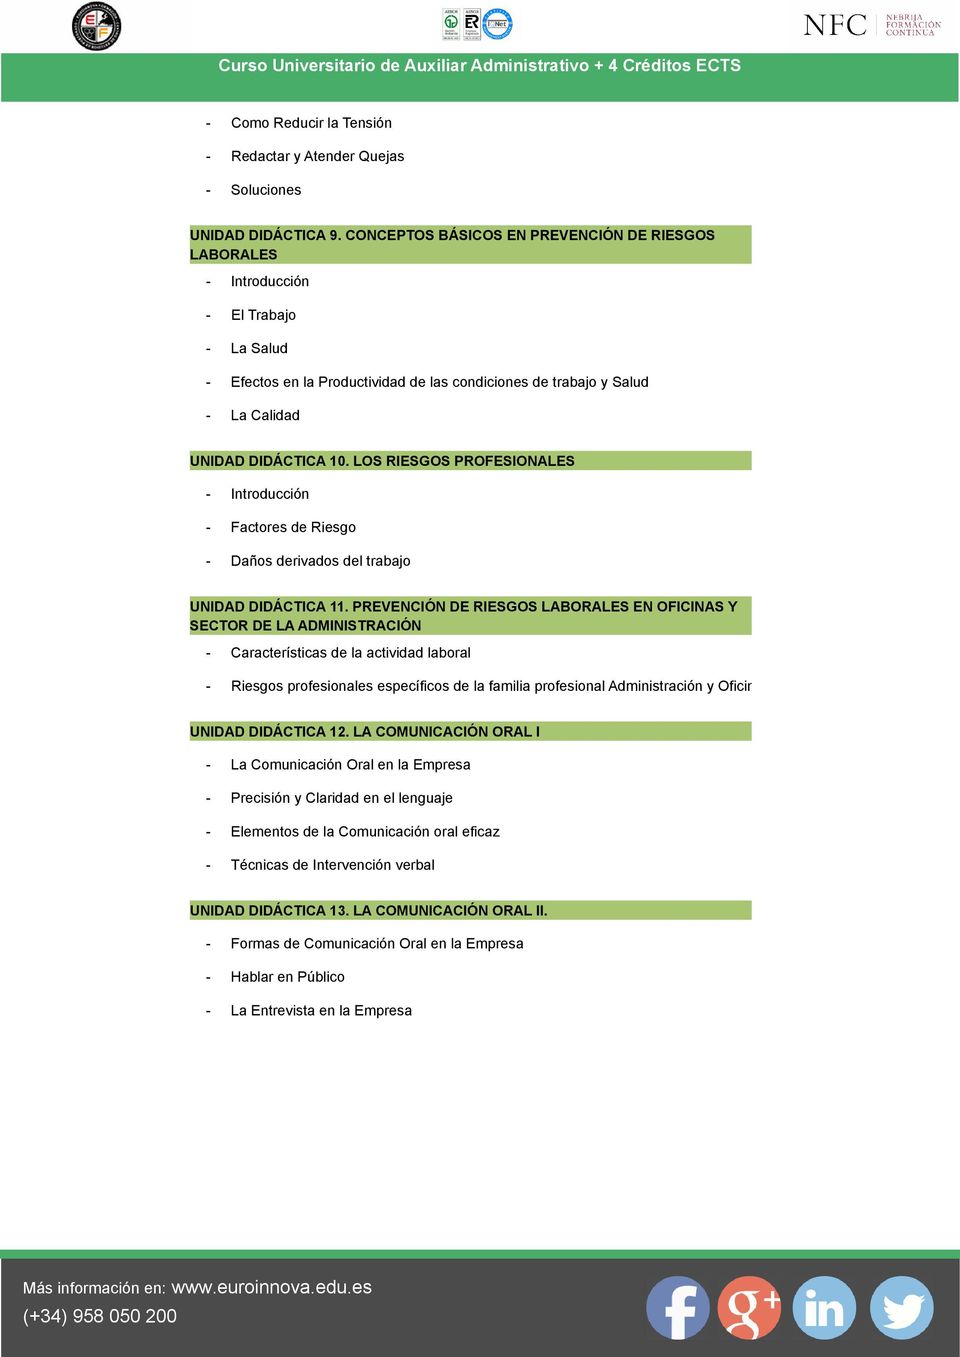 LOS RIESGOS PROFESIONALES - Introducción - Factores de Riesgo - Daños derivados del trabajo UNIDAD DIDÁCTICA 11.